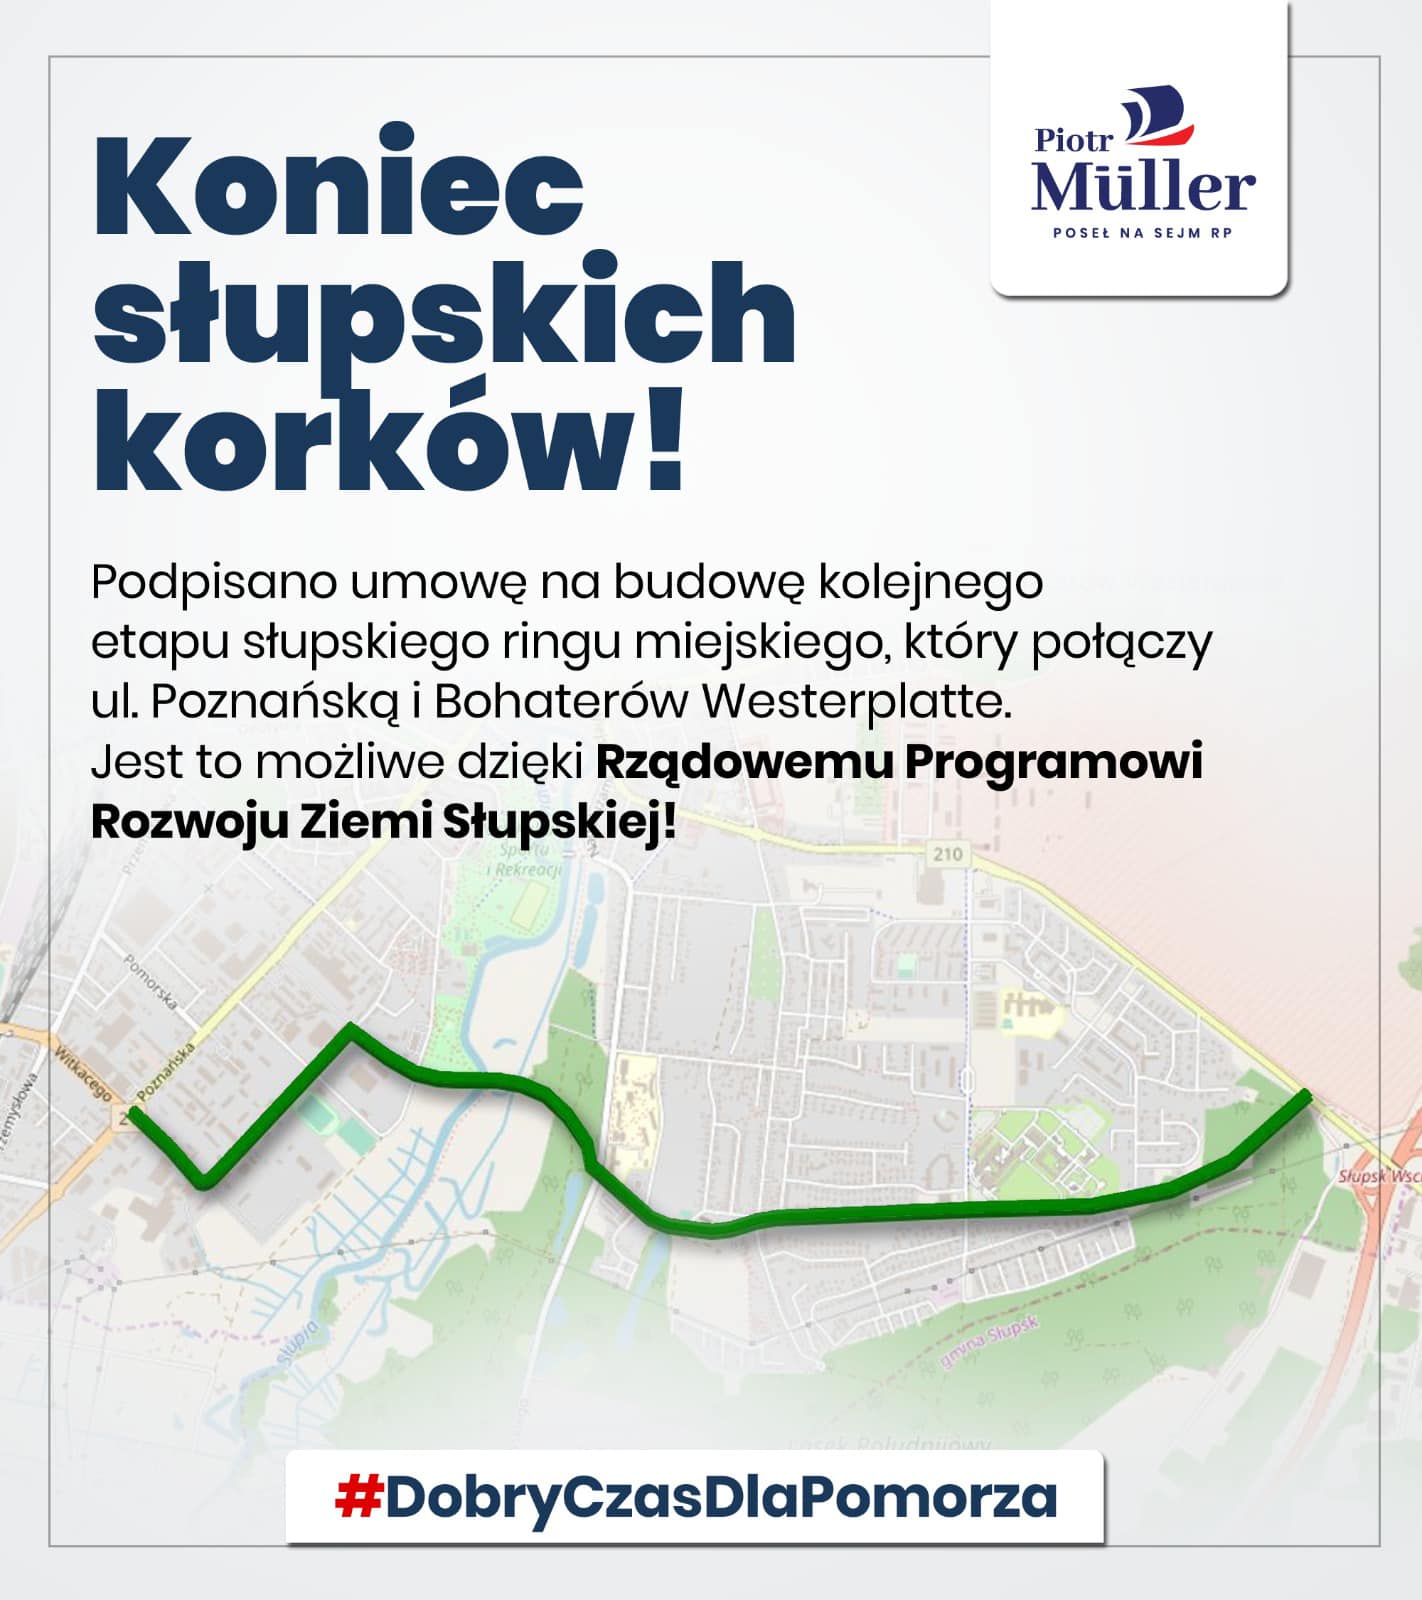 Umowa na budowę kolejnego etapu słupskiego ringu miejskiego, który połączy ul. Poznańską i Bohaterów Westerplatte, podpisana.